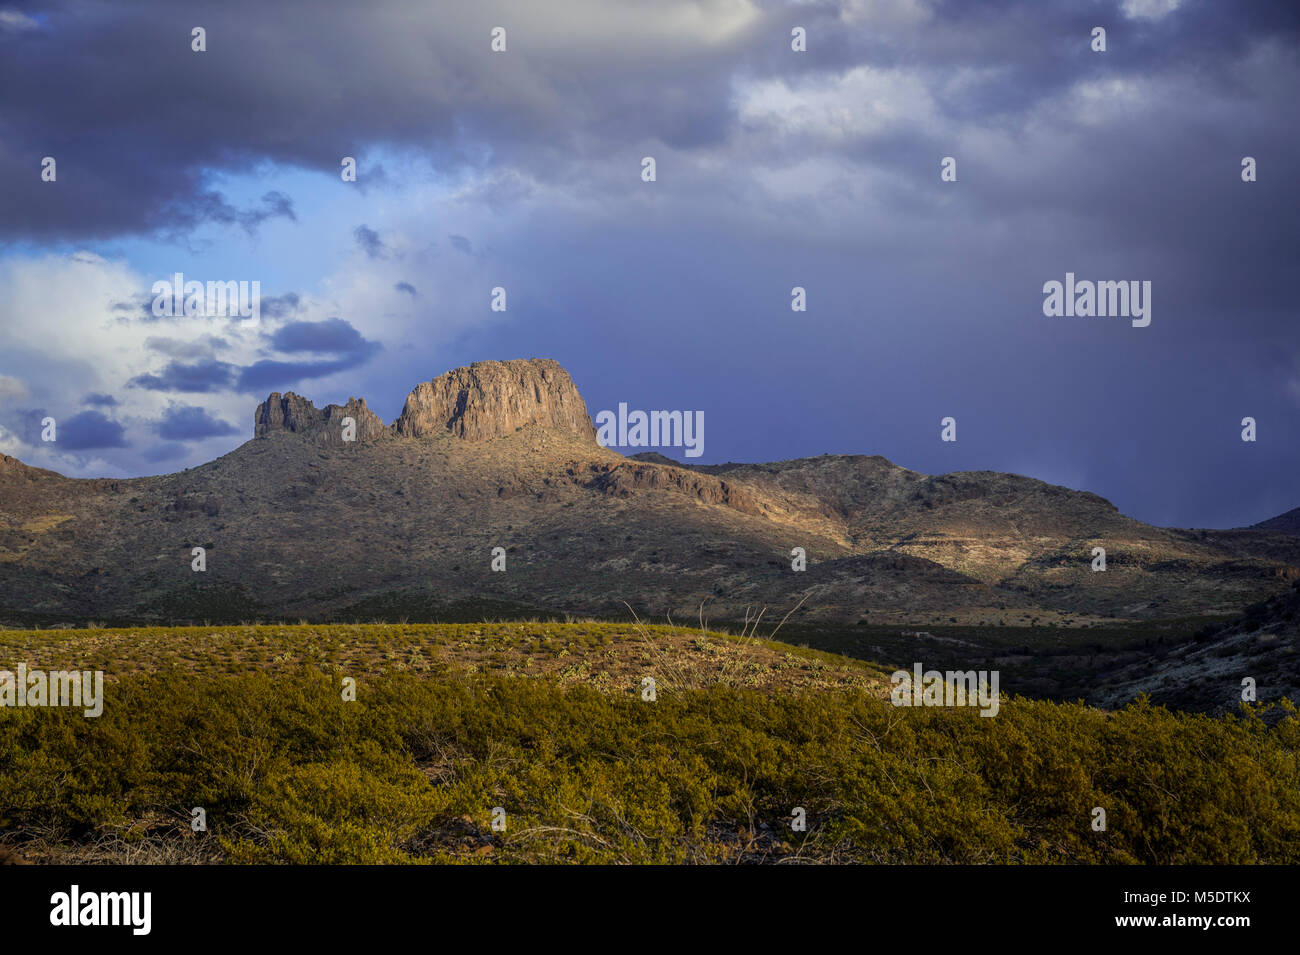 Deserto montagna con albero di luce, Arizona, Stati Uniti d'America Foto Stock